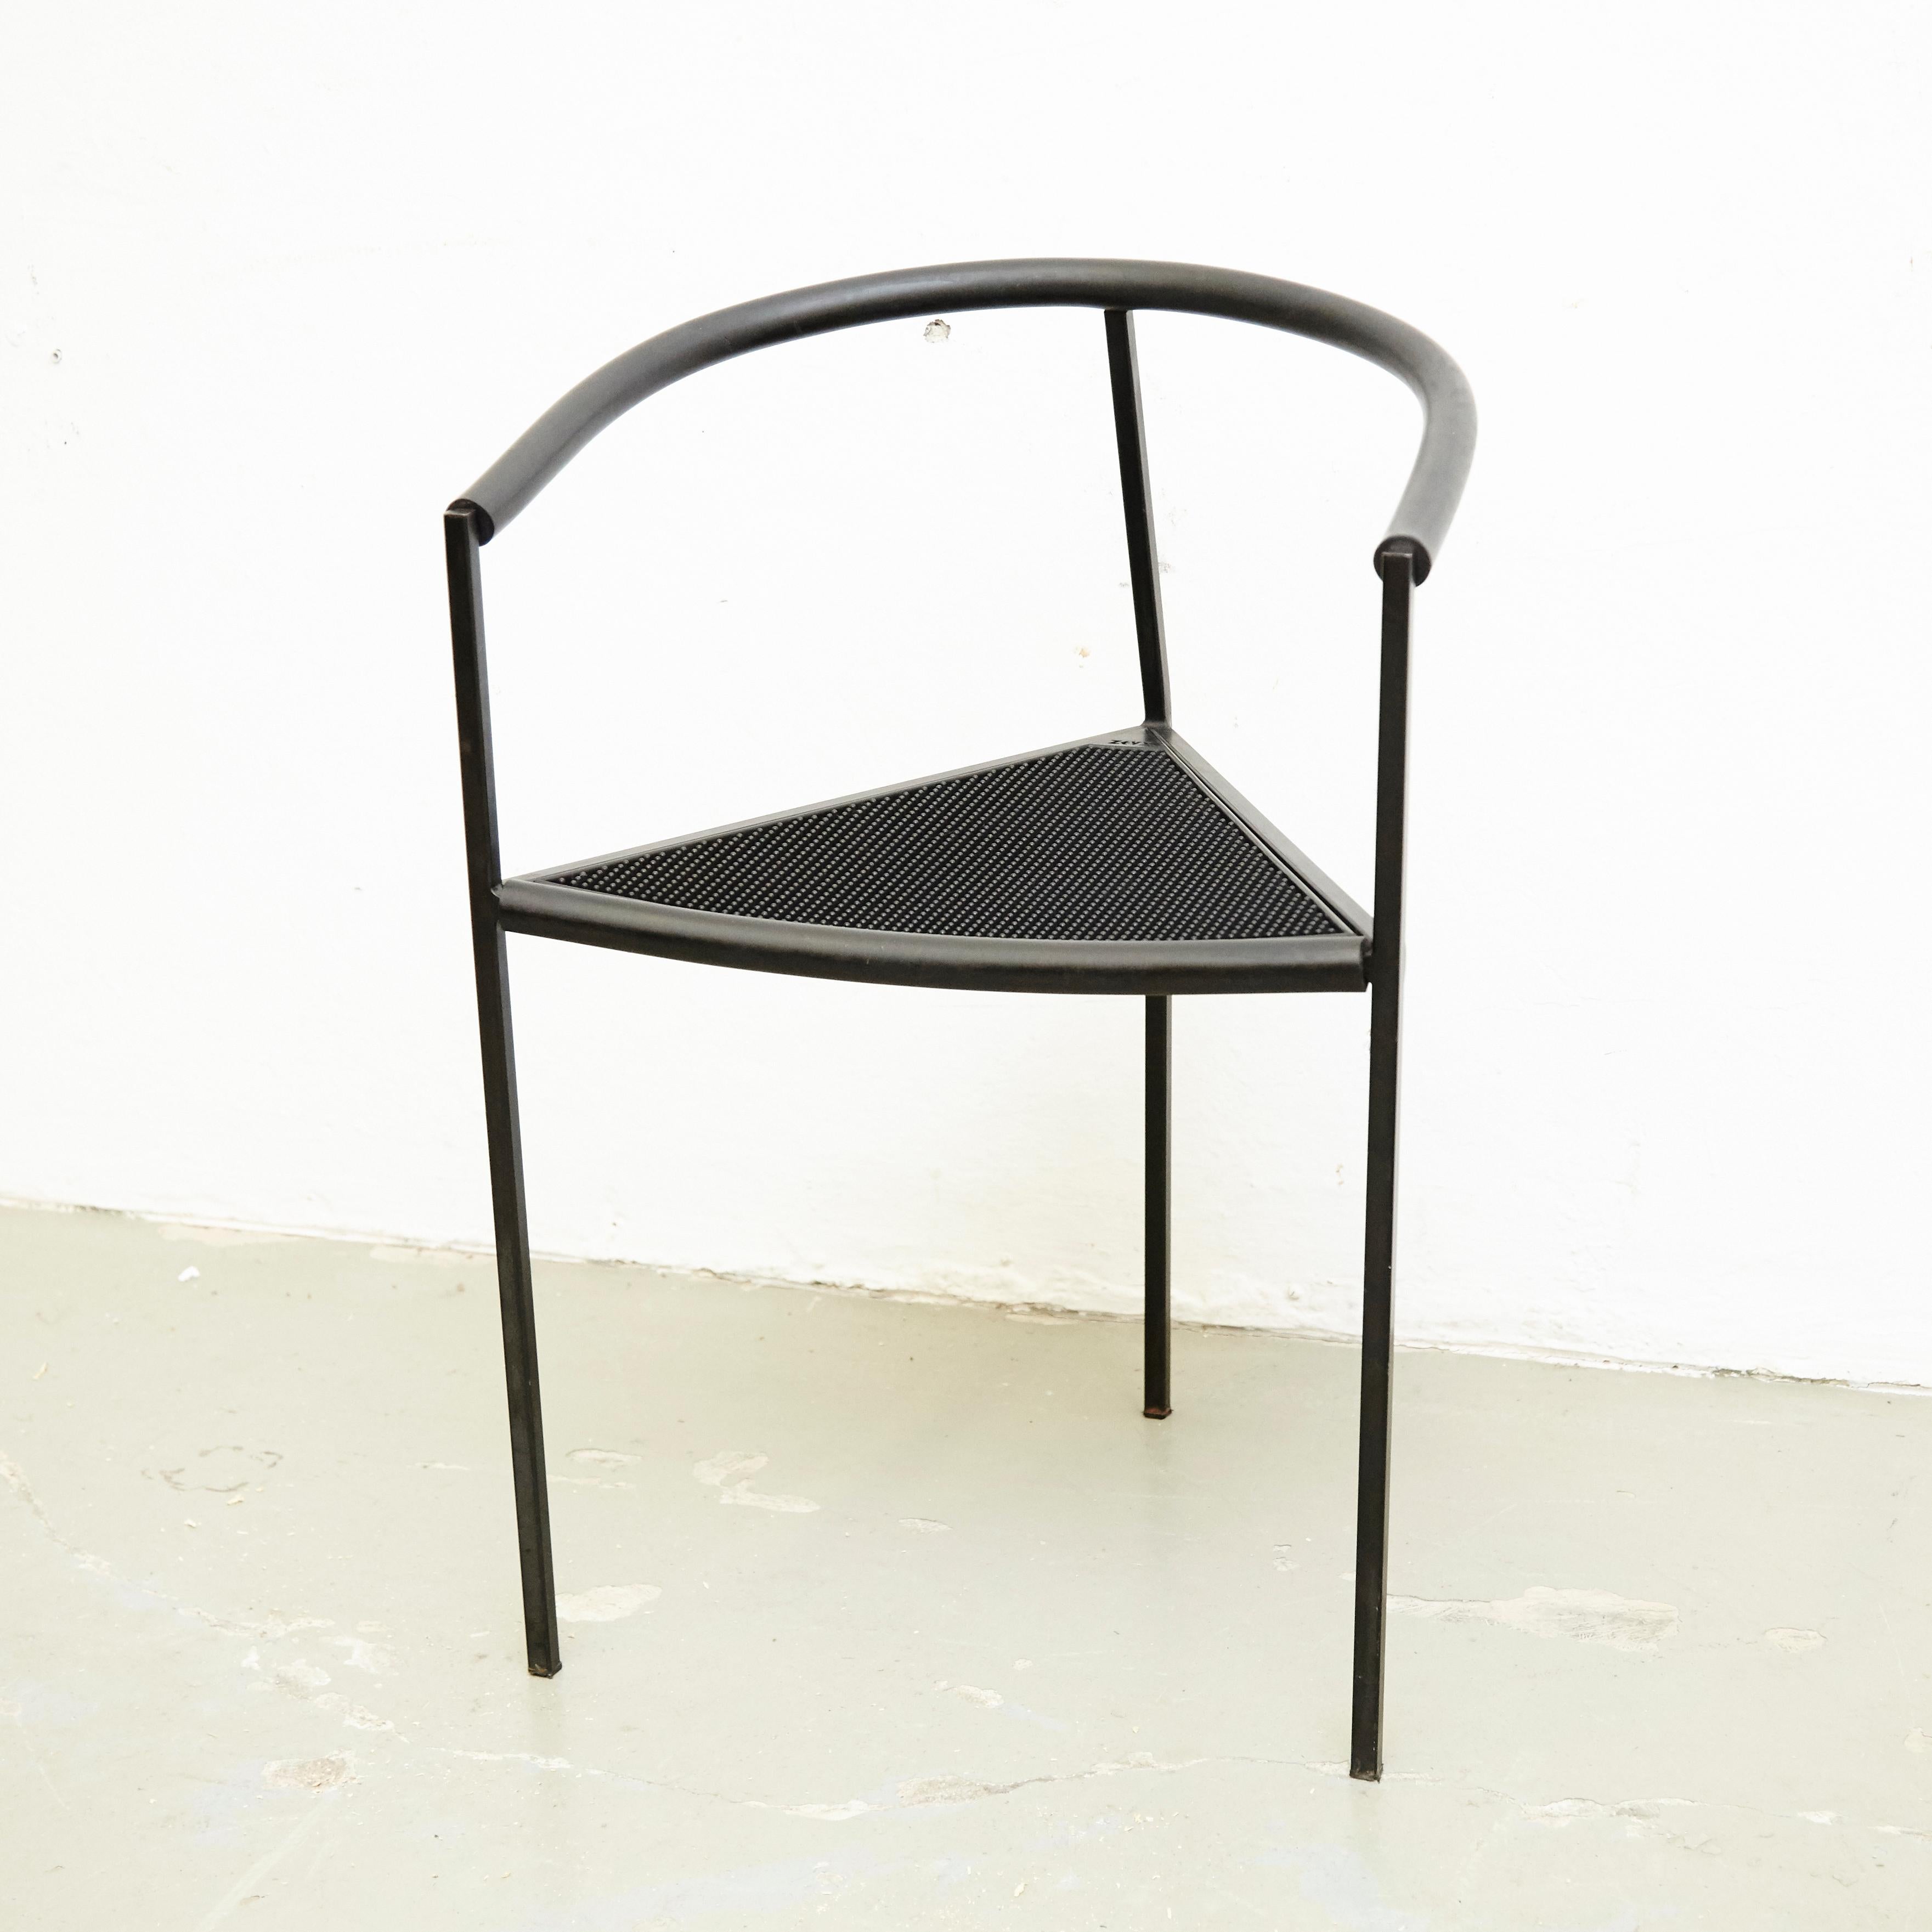 Chair designed by Maurizio Peregalli model 